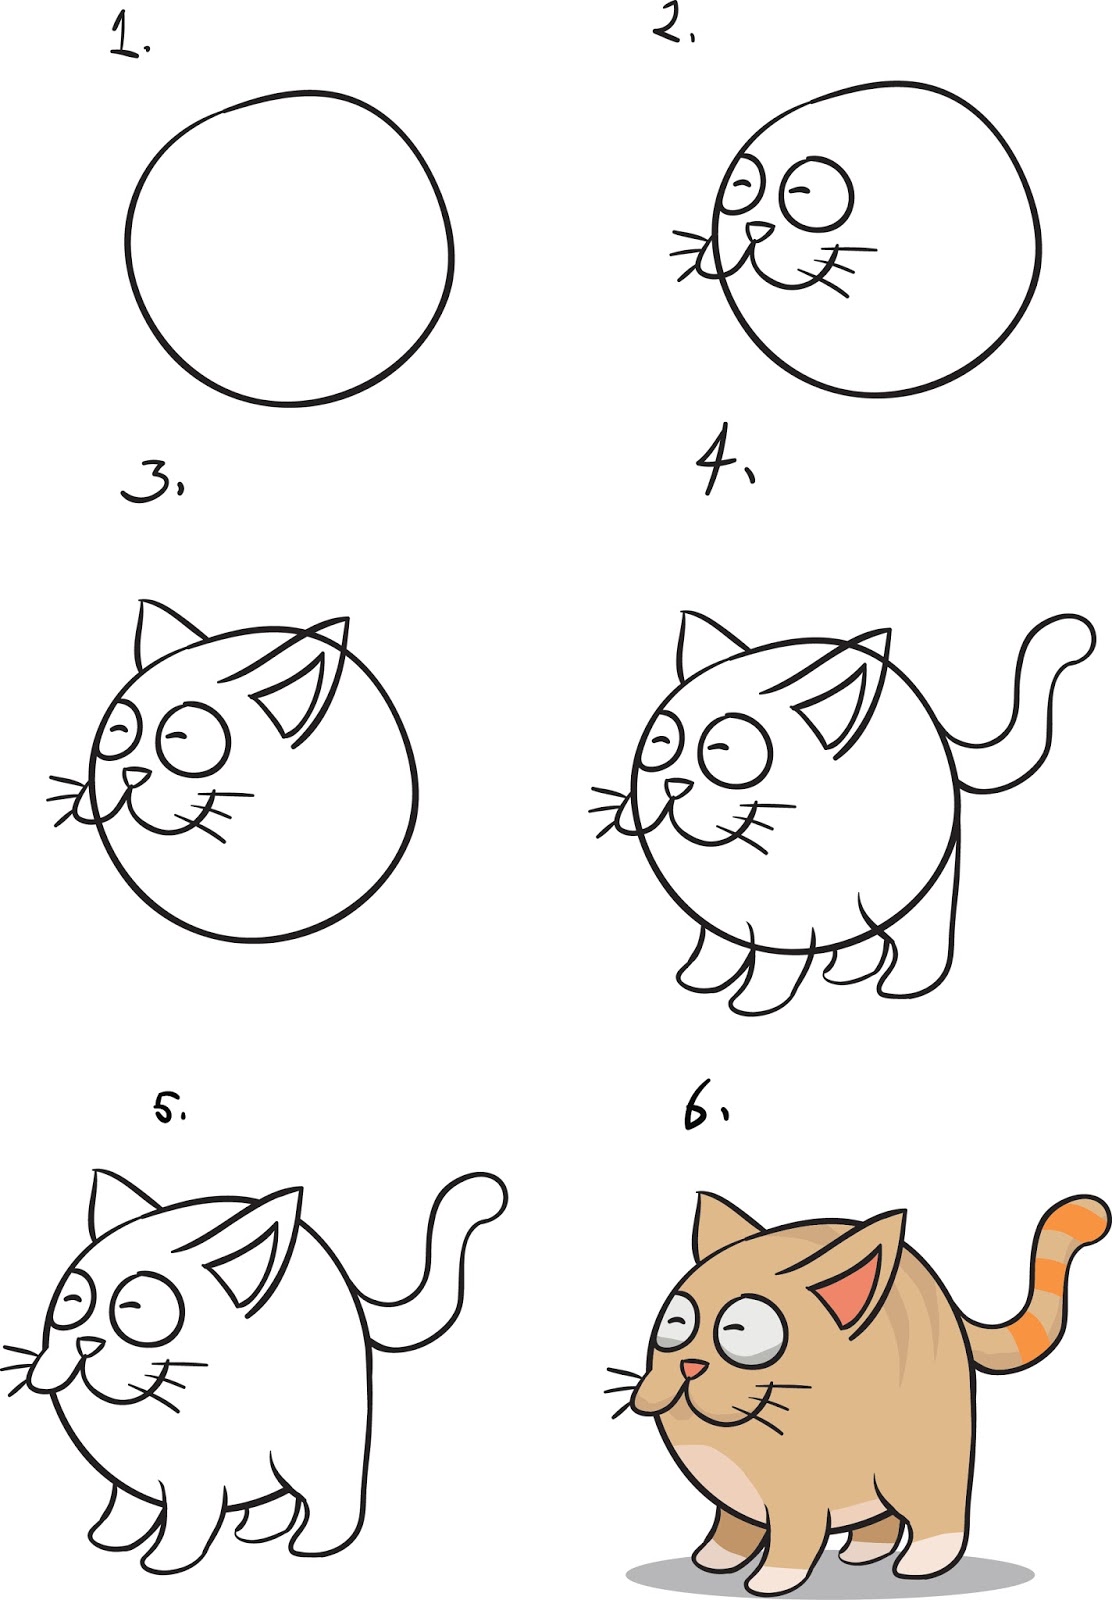 Mewarnai Gambar Sketsa Hewan  Kucing  Yang  Mudah  Terbaru 